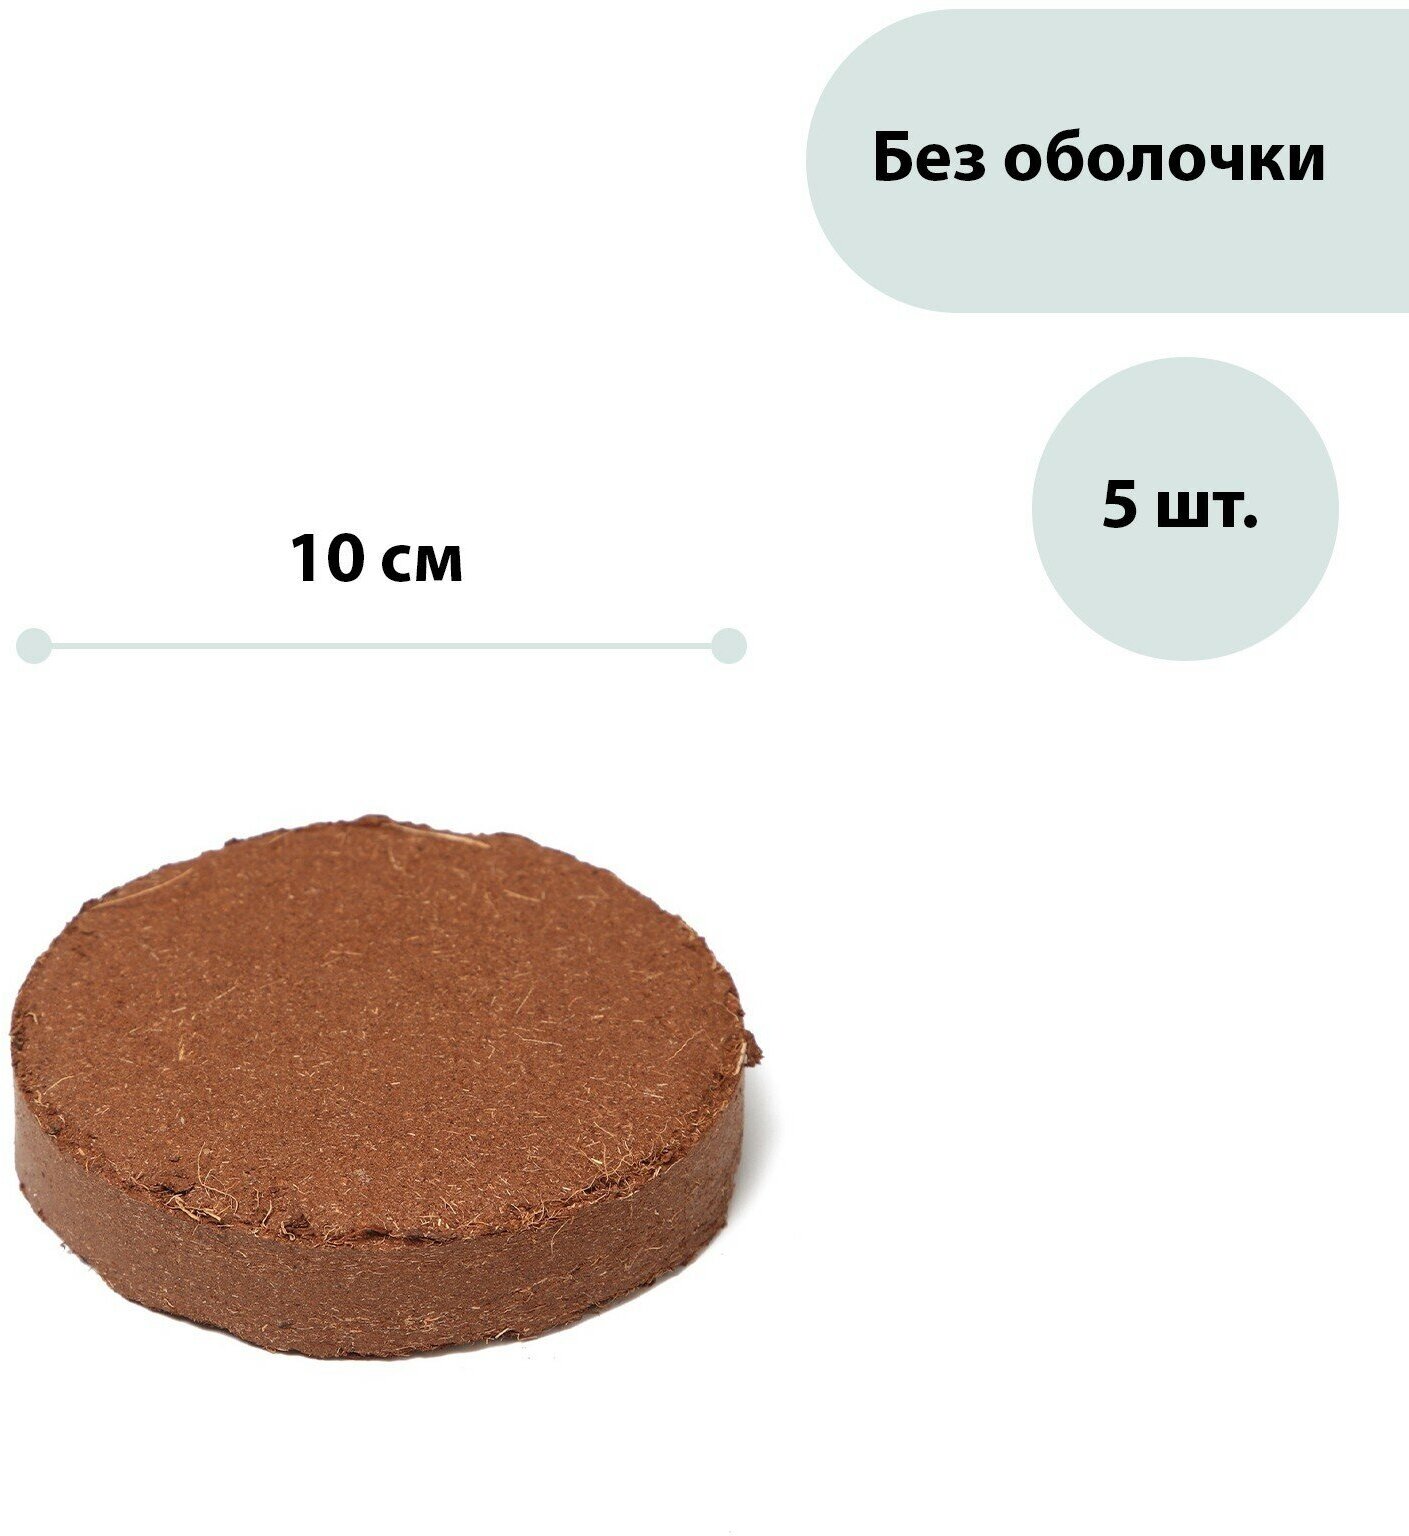 Субстрат кокосовый в таблетках 45 л d = 10 см набор 5 шт без оболочки Greengo